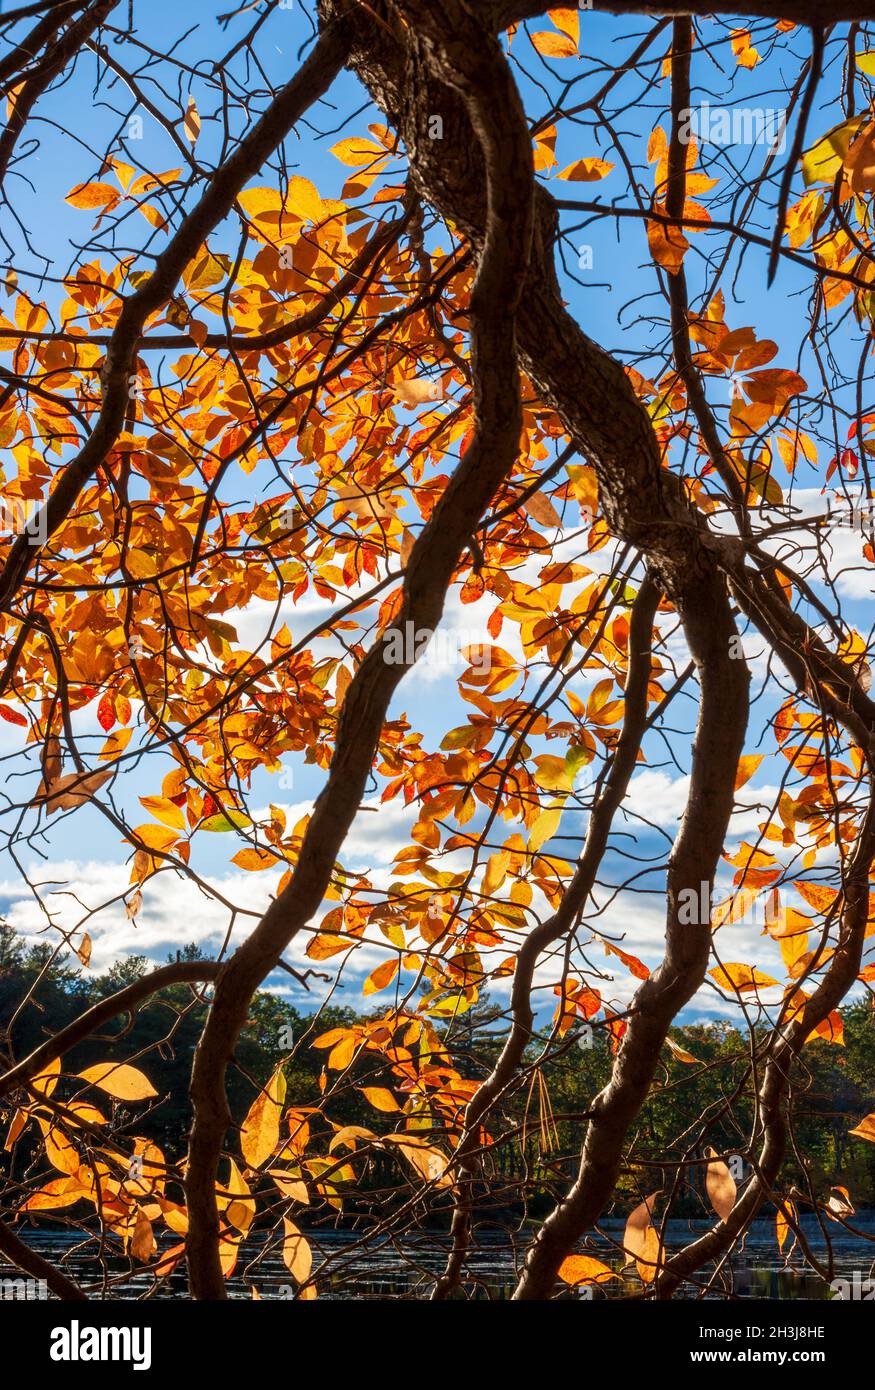 Branche de gommier noir (Nyssa sylvatica) avec feuillage d'automne dans les tons d'orange vif. Eames Pond, Moore State Park, Paxton, ma, États-Unis Banque D'Images